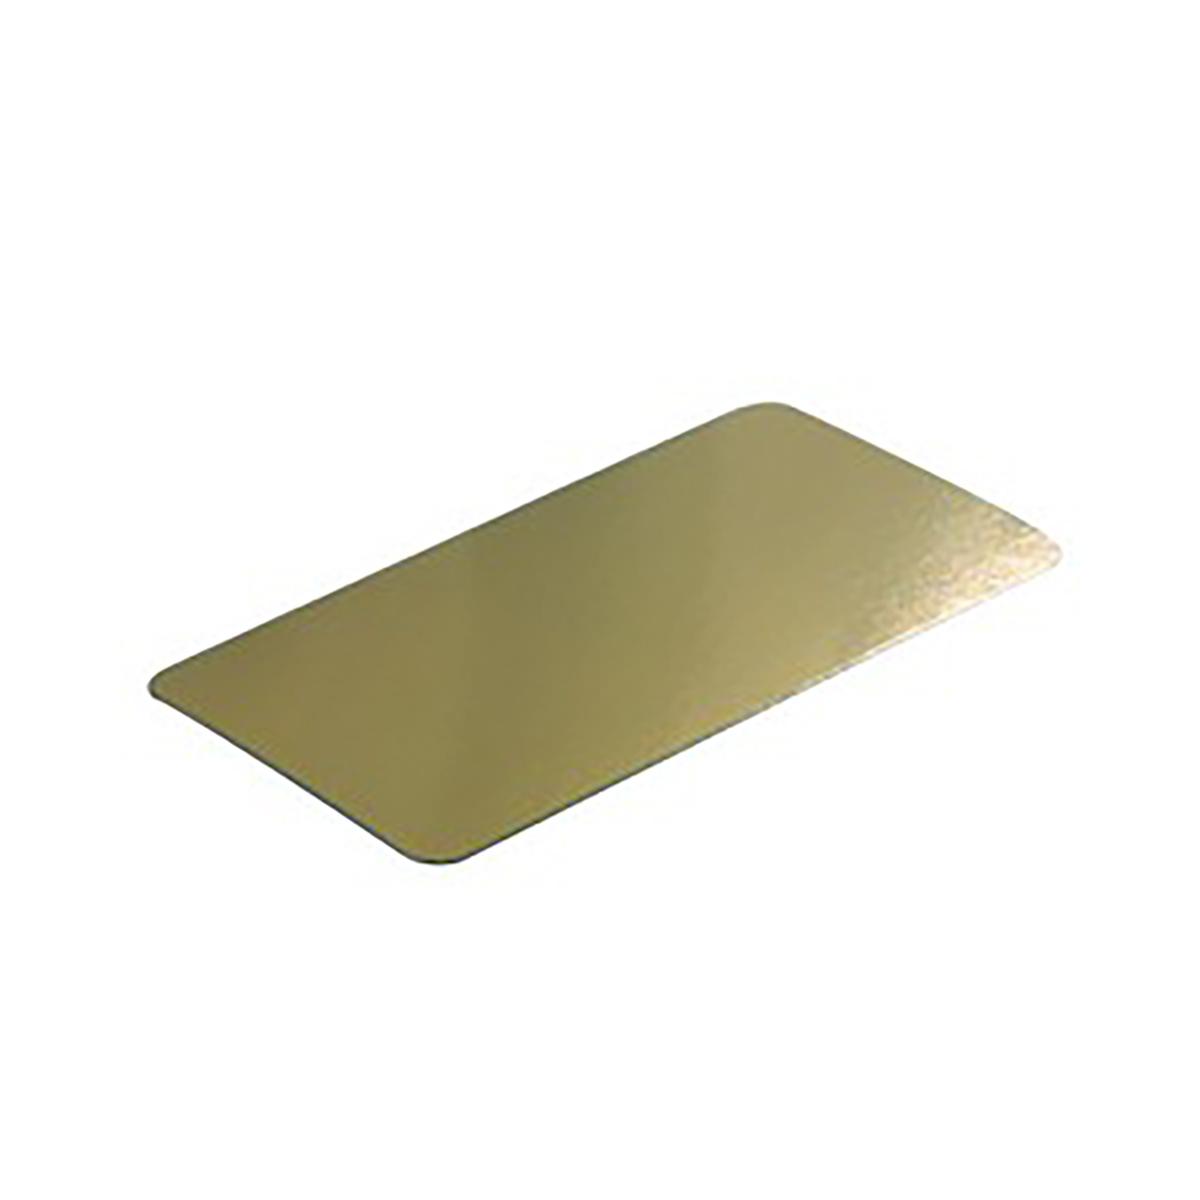 Afbeelding van Pak à 250 bodemkarton 15,5x7,5 cm goud/zilver